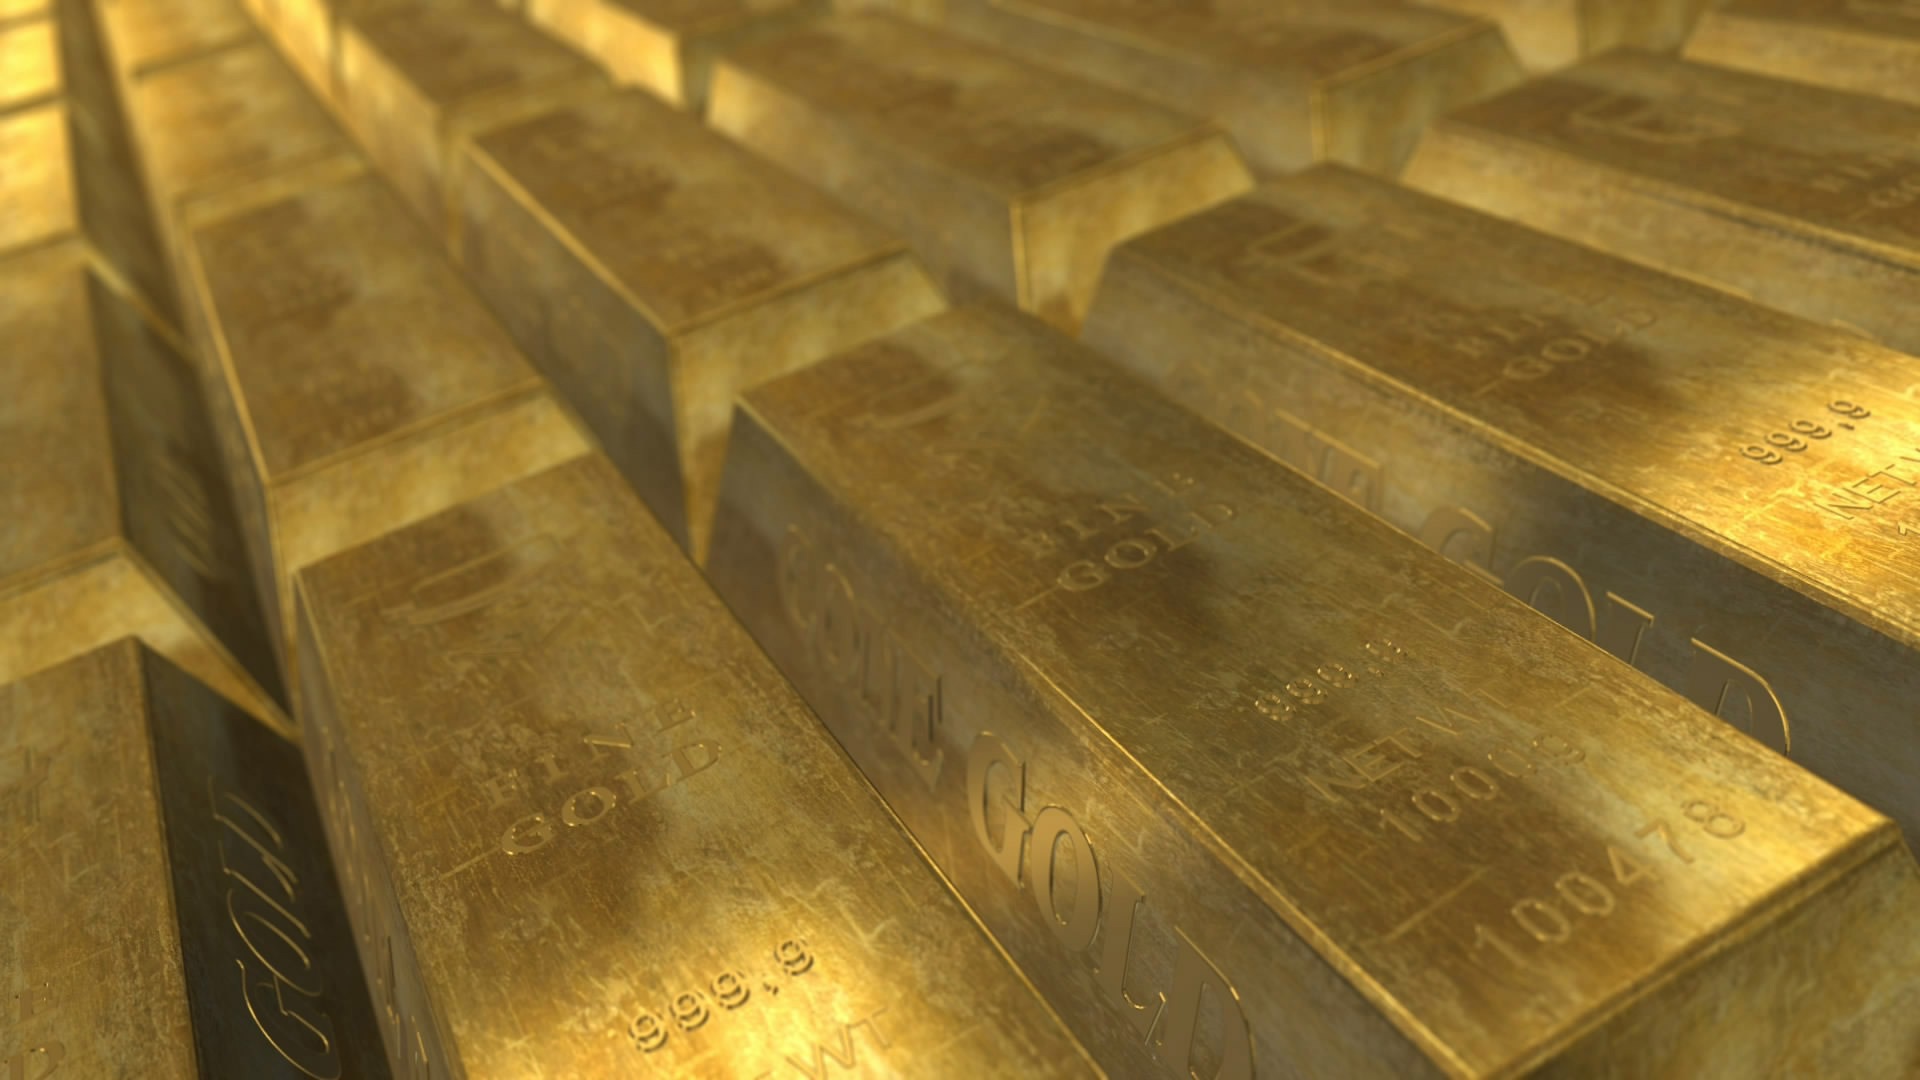 Egon Von Greyerz: Dark Times Ahead As Dow Plunges Gold Explodes $35,000oz